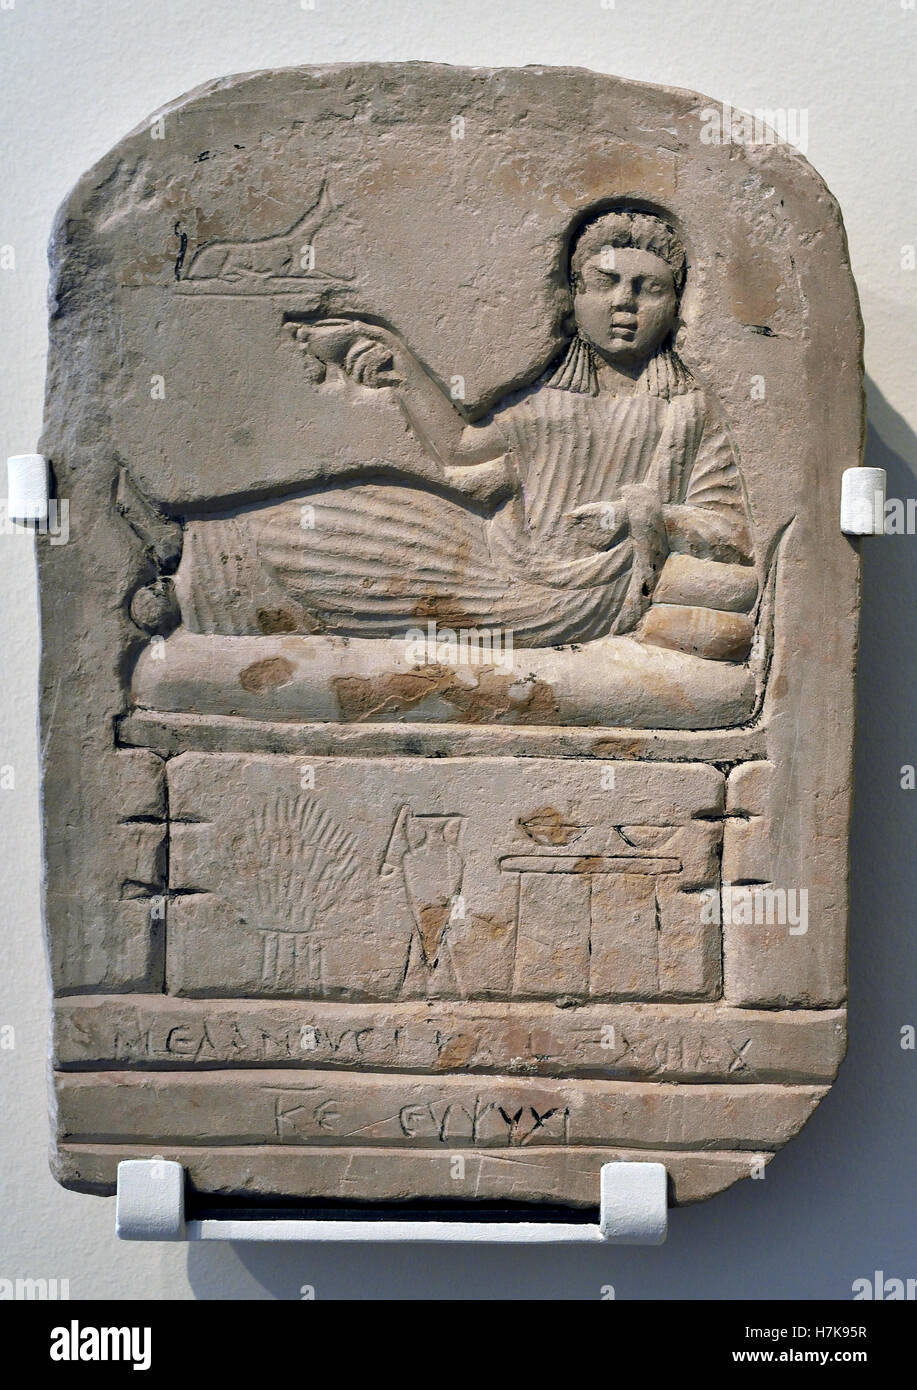 Rilievo con raffigurazione di un defunto su un letto 1-3 secolo egiziano Egitto ( defunto con Anubis ) Foto Stock